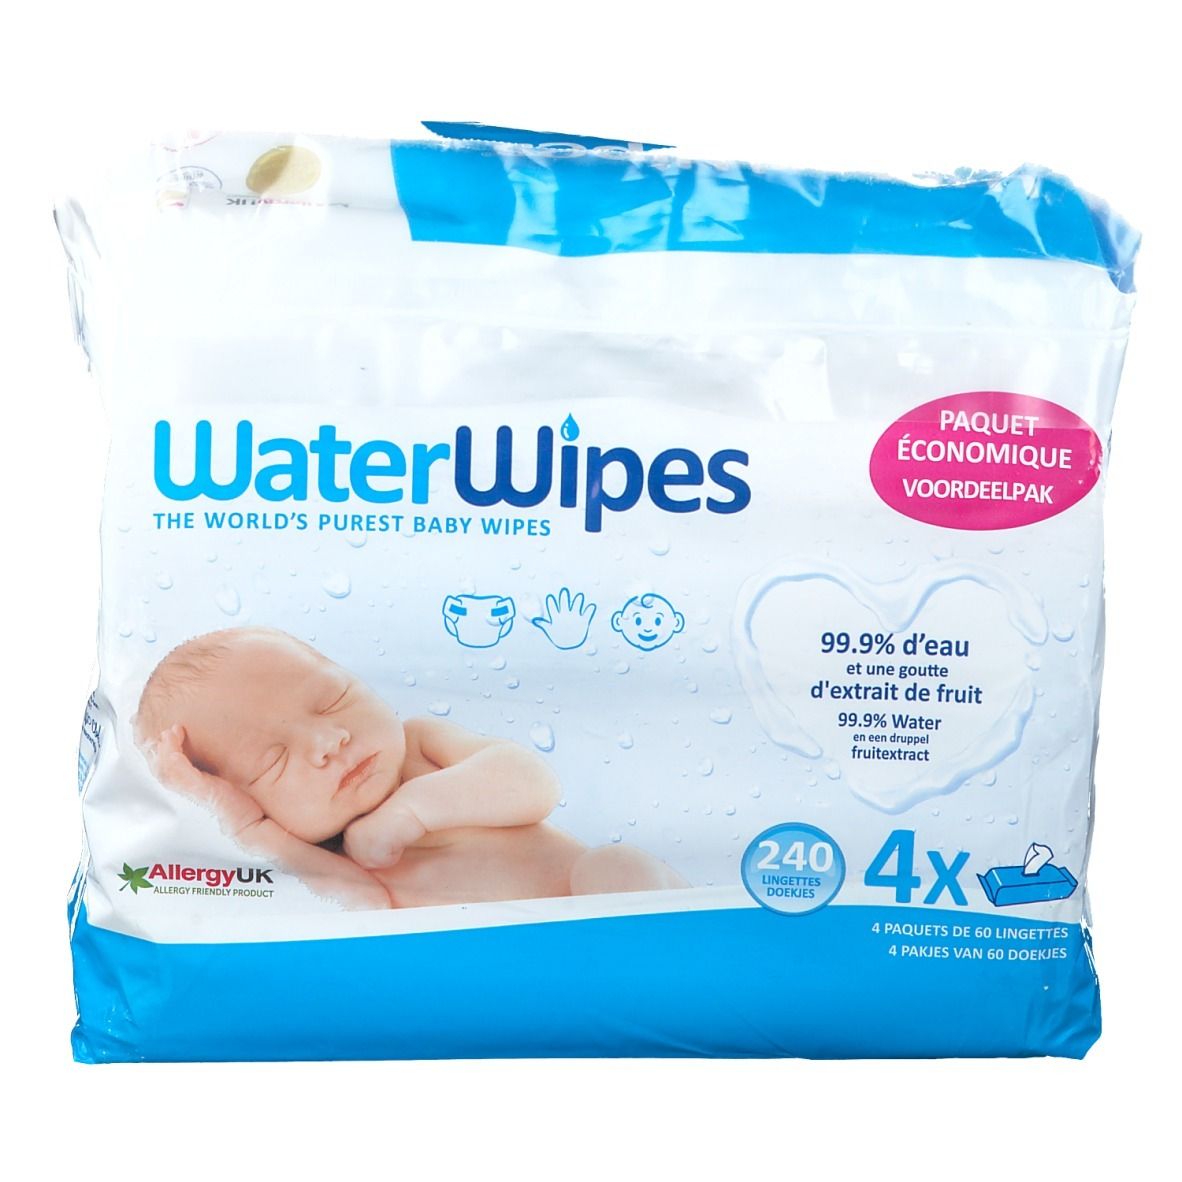 Lingettes WaterWipes pour bébé - 99.9% d'eau : idéal pour la peau